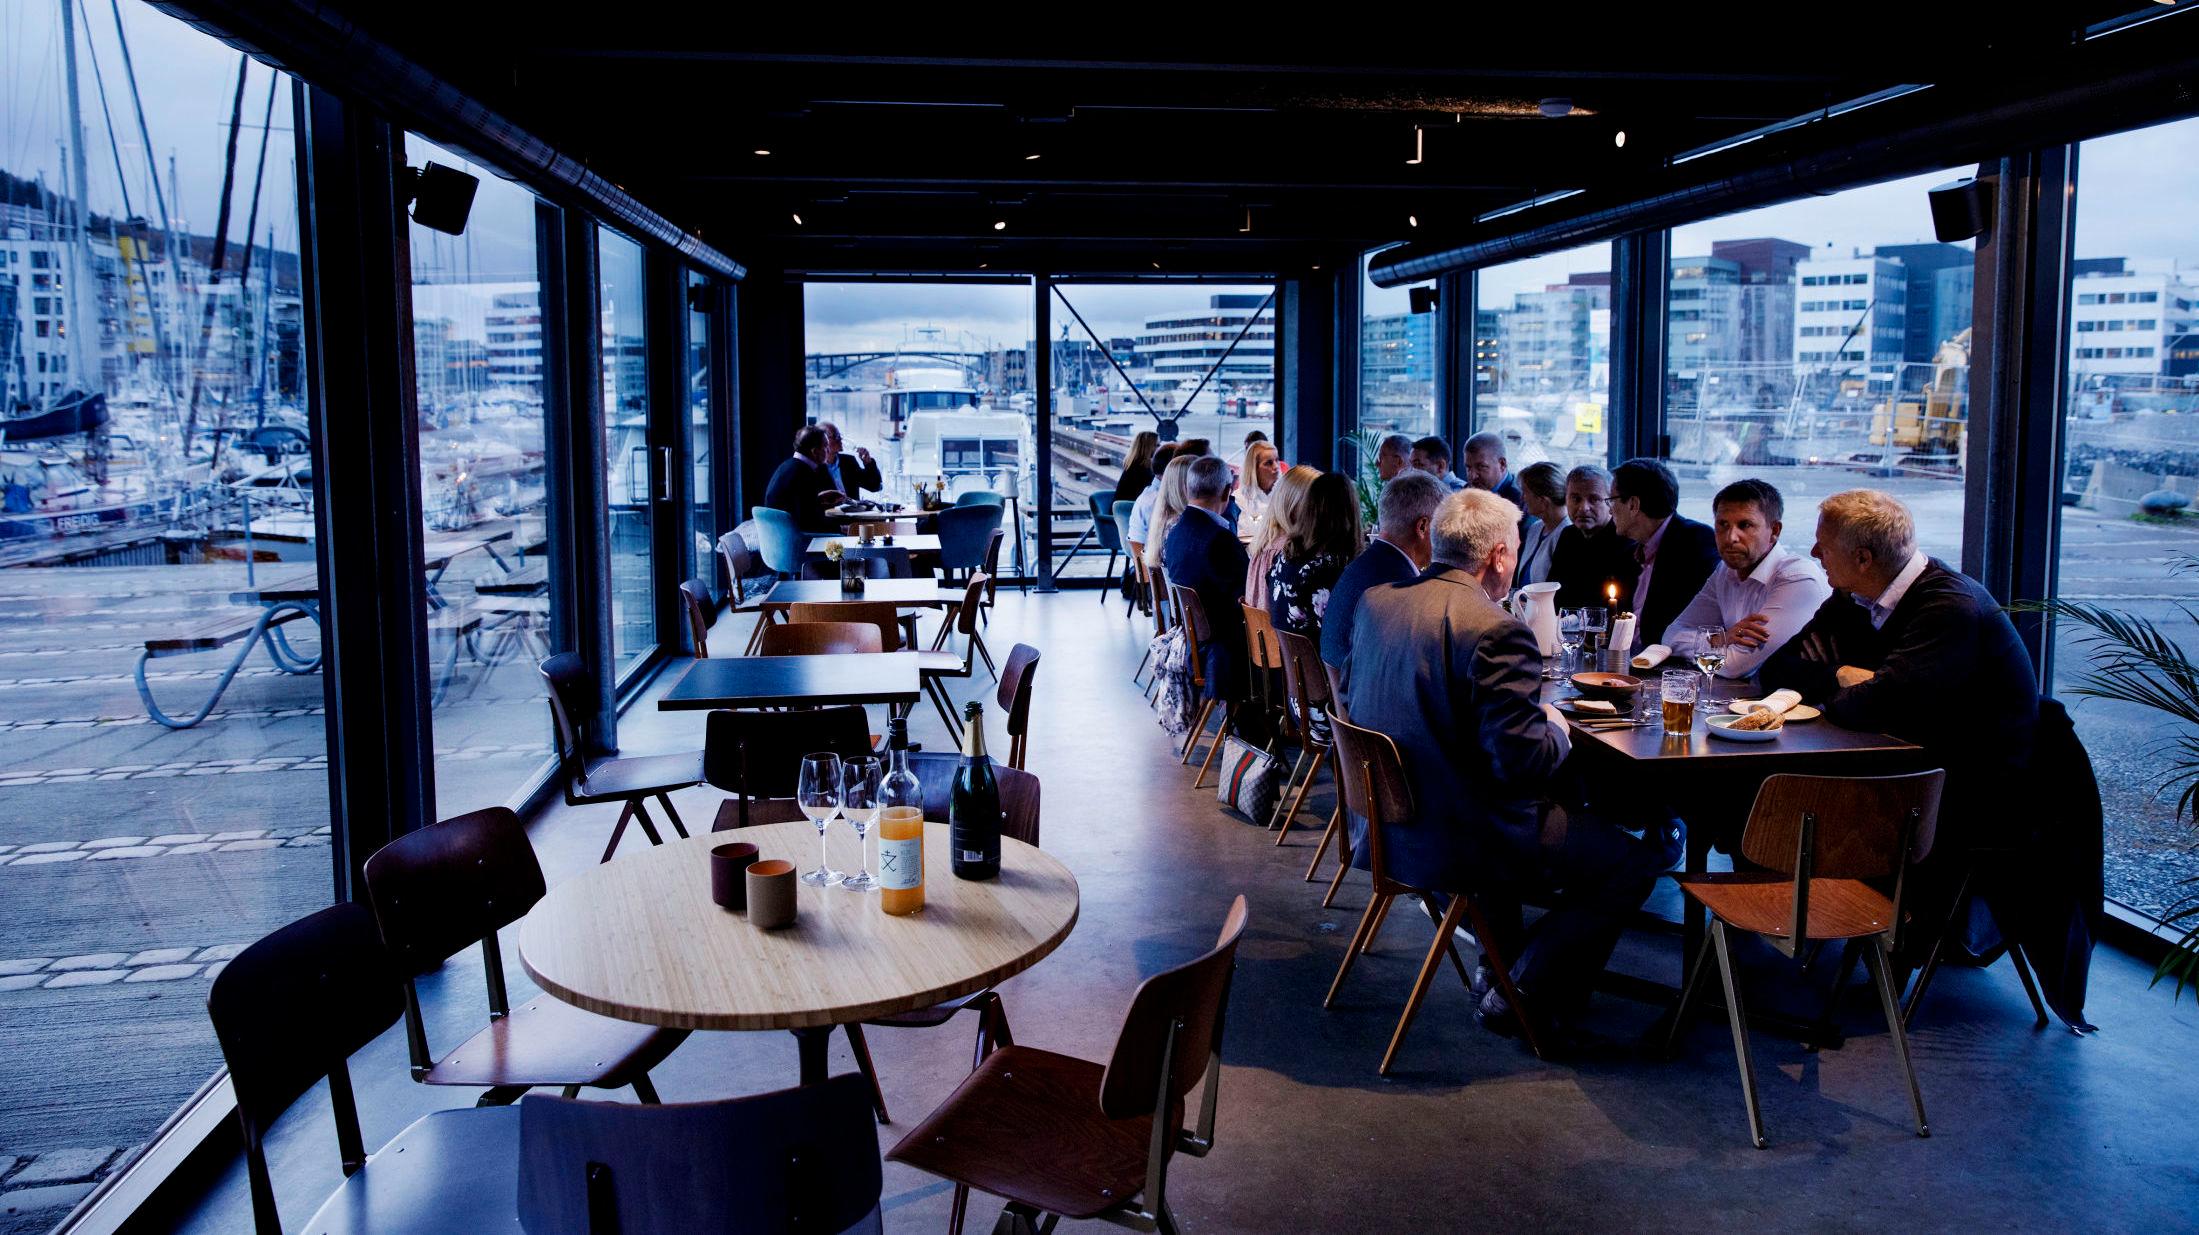 EKSEPSJONELT: VGs restaurantanmelder mener Colonialen Kranen er en av landets aller beste restauranter. Foto: Paul S. Amundsen/VG